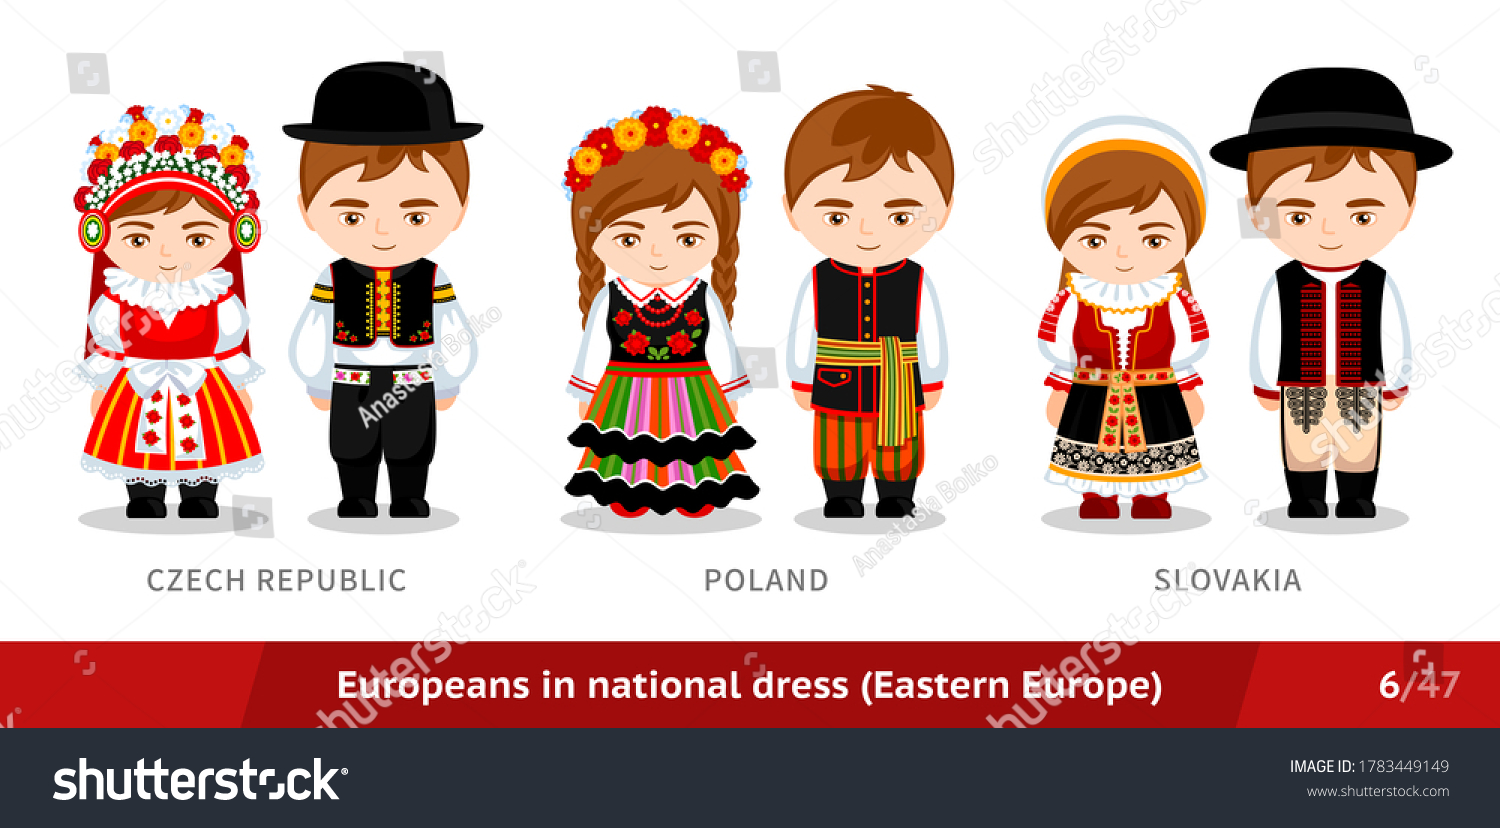 7,957 Czech national dress Images, Stock Photos & Vectors | Shutterstock